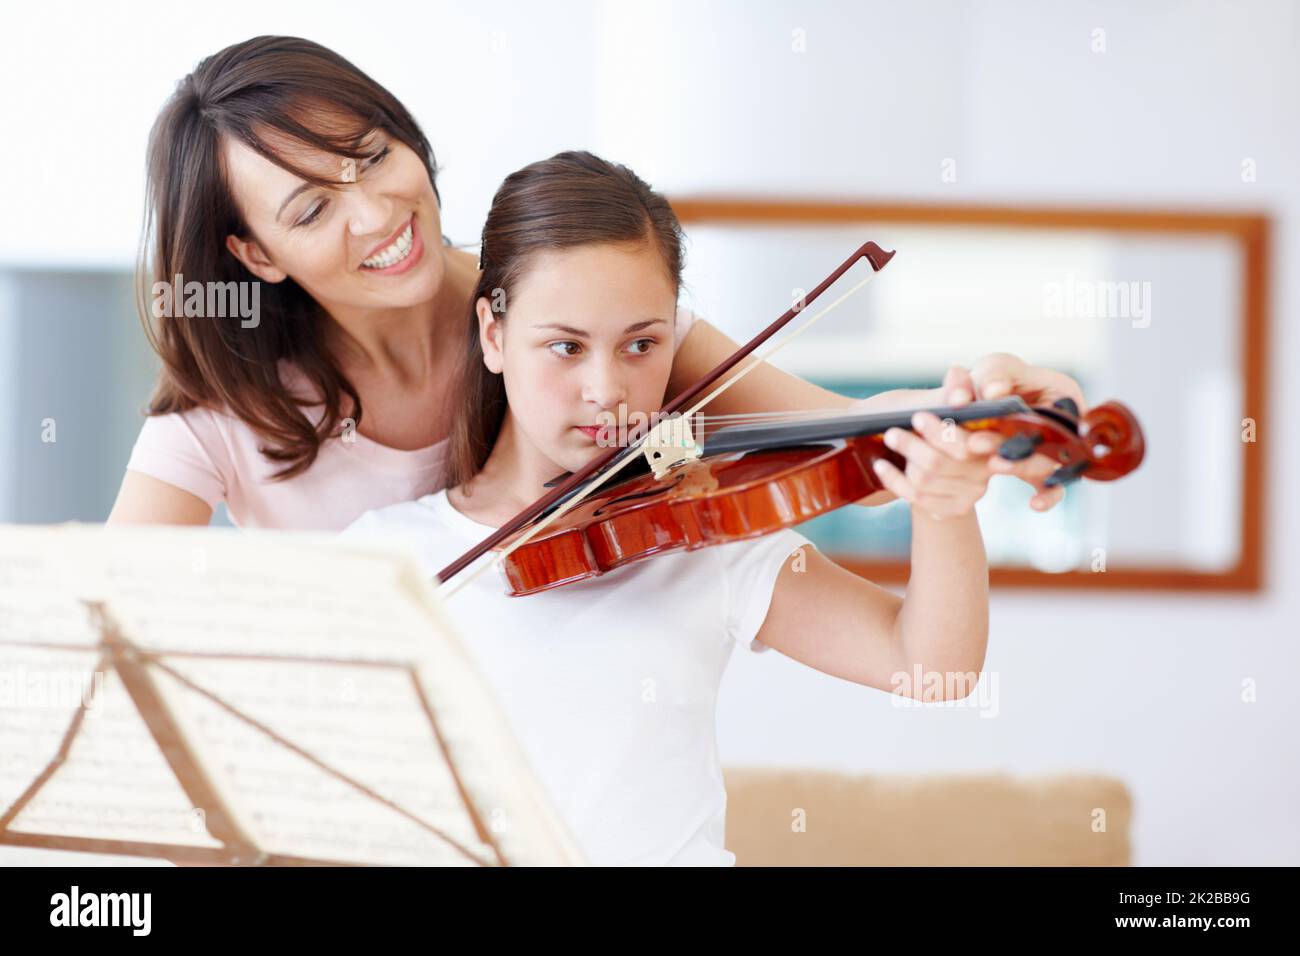 Übung macht den Meister, mein Mädchen. Eine Mutter hilft ihrer Tochter, während sie die Geige praktiziert - Copyspace. Stockfoto